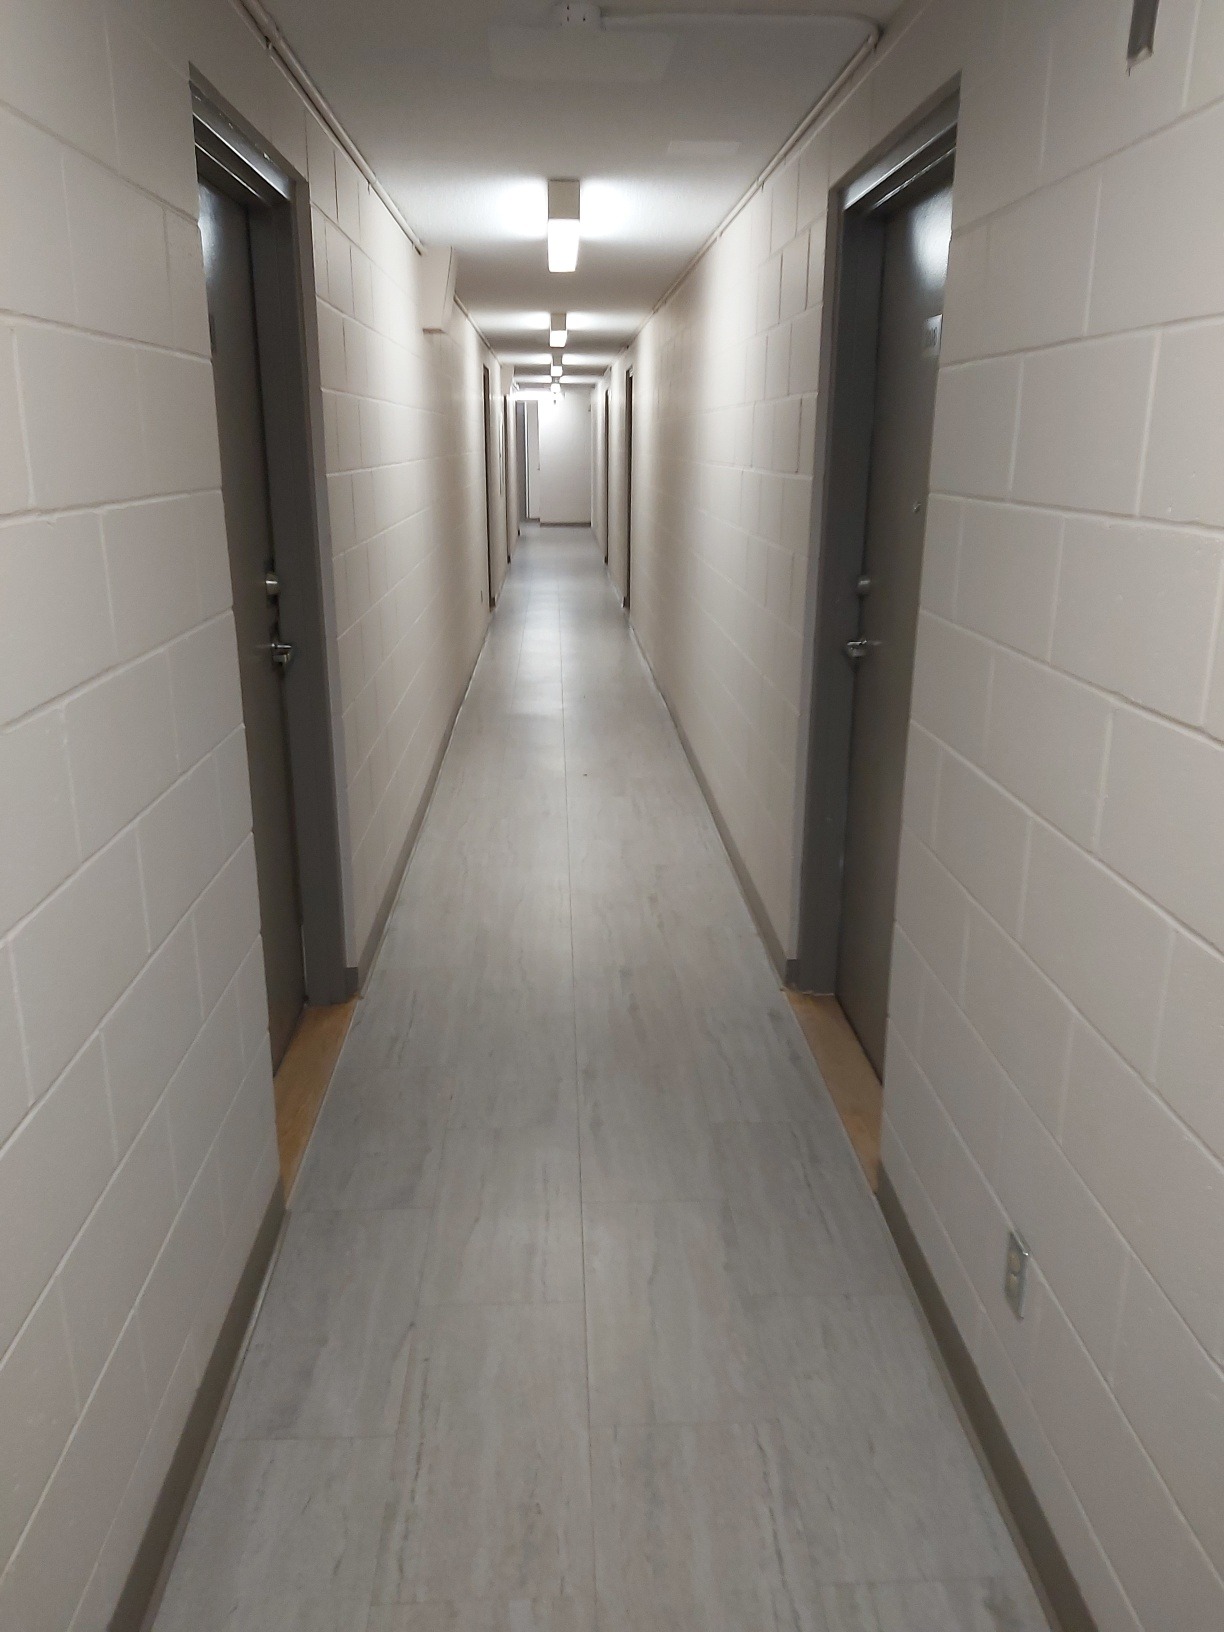 Corridor-stairwells-3